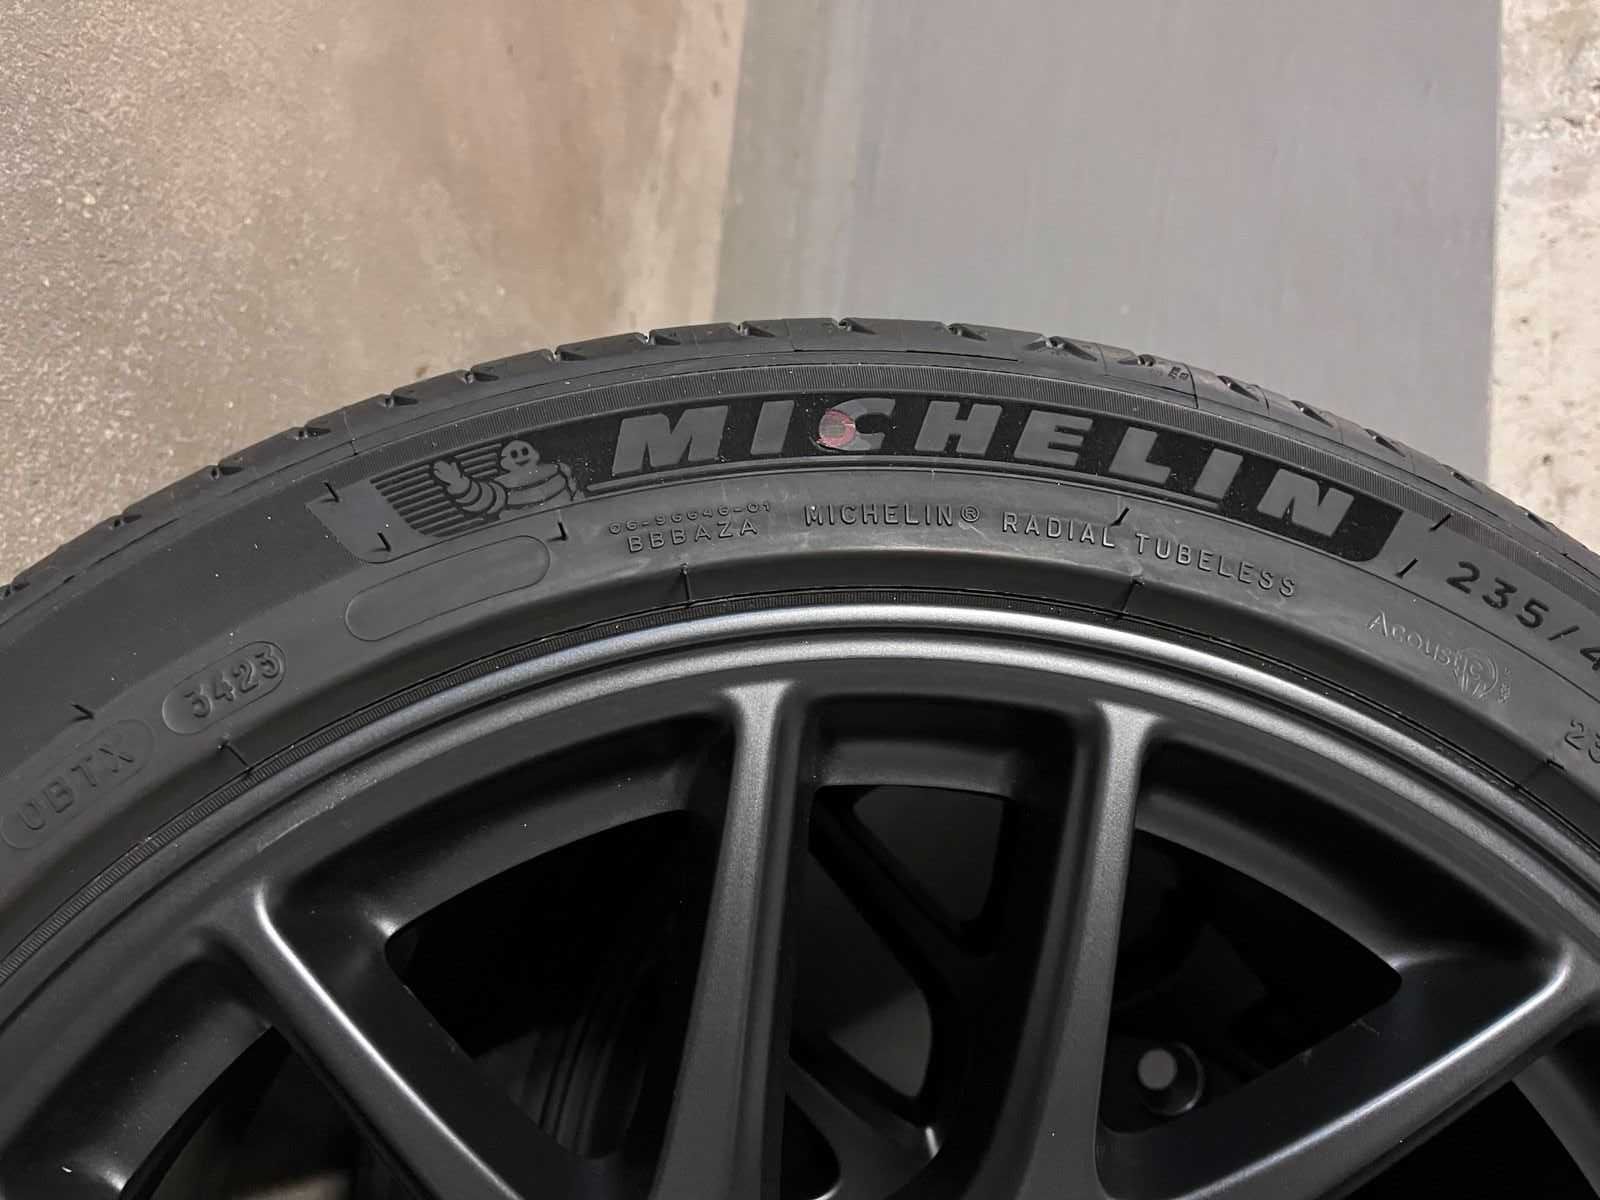 Jante originale 18" Tesla Model 3 Michelin e Primacy 235/45 R 18 98V